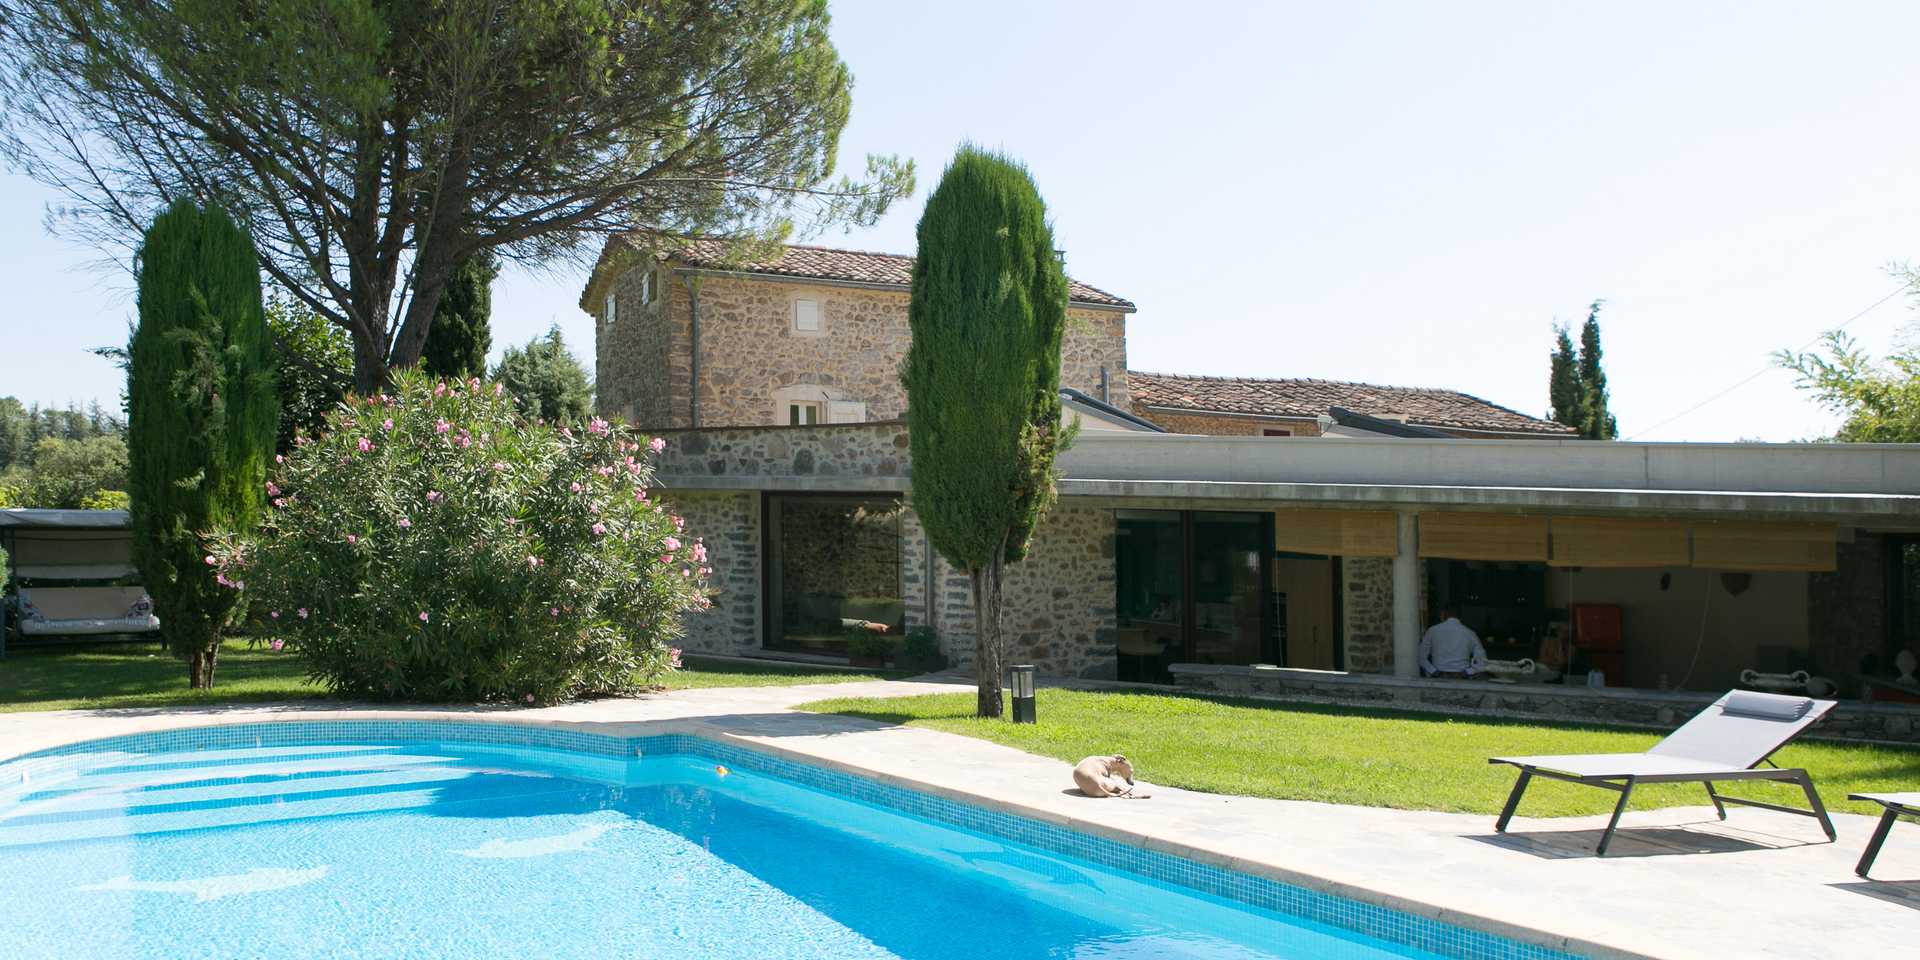 Rénovation d'un mas provencal avec piscine par un architecte d'Aix-en-Provence